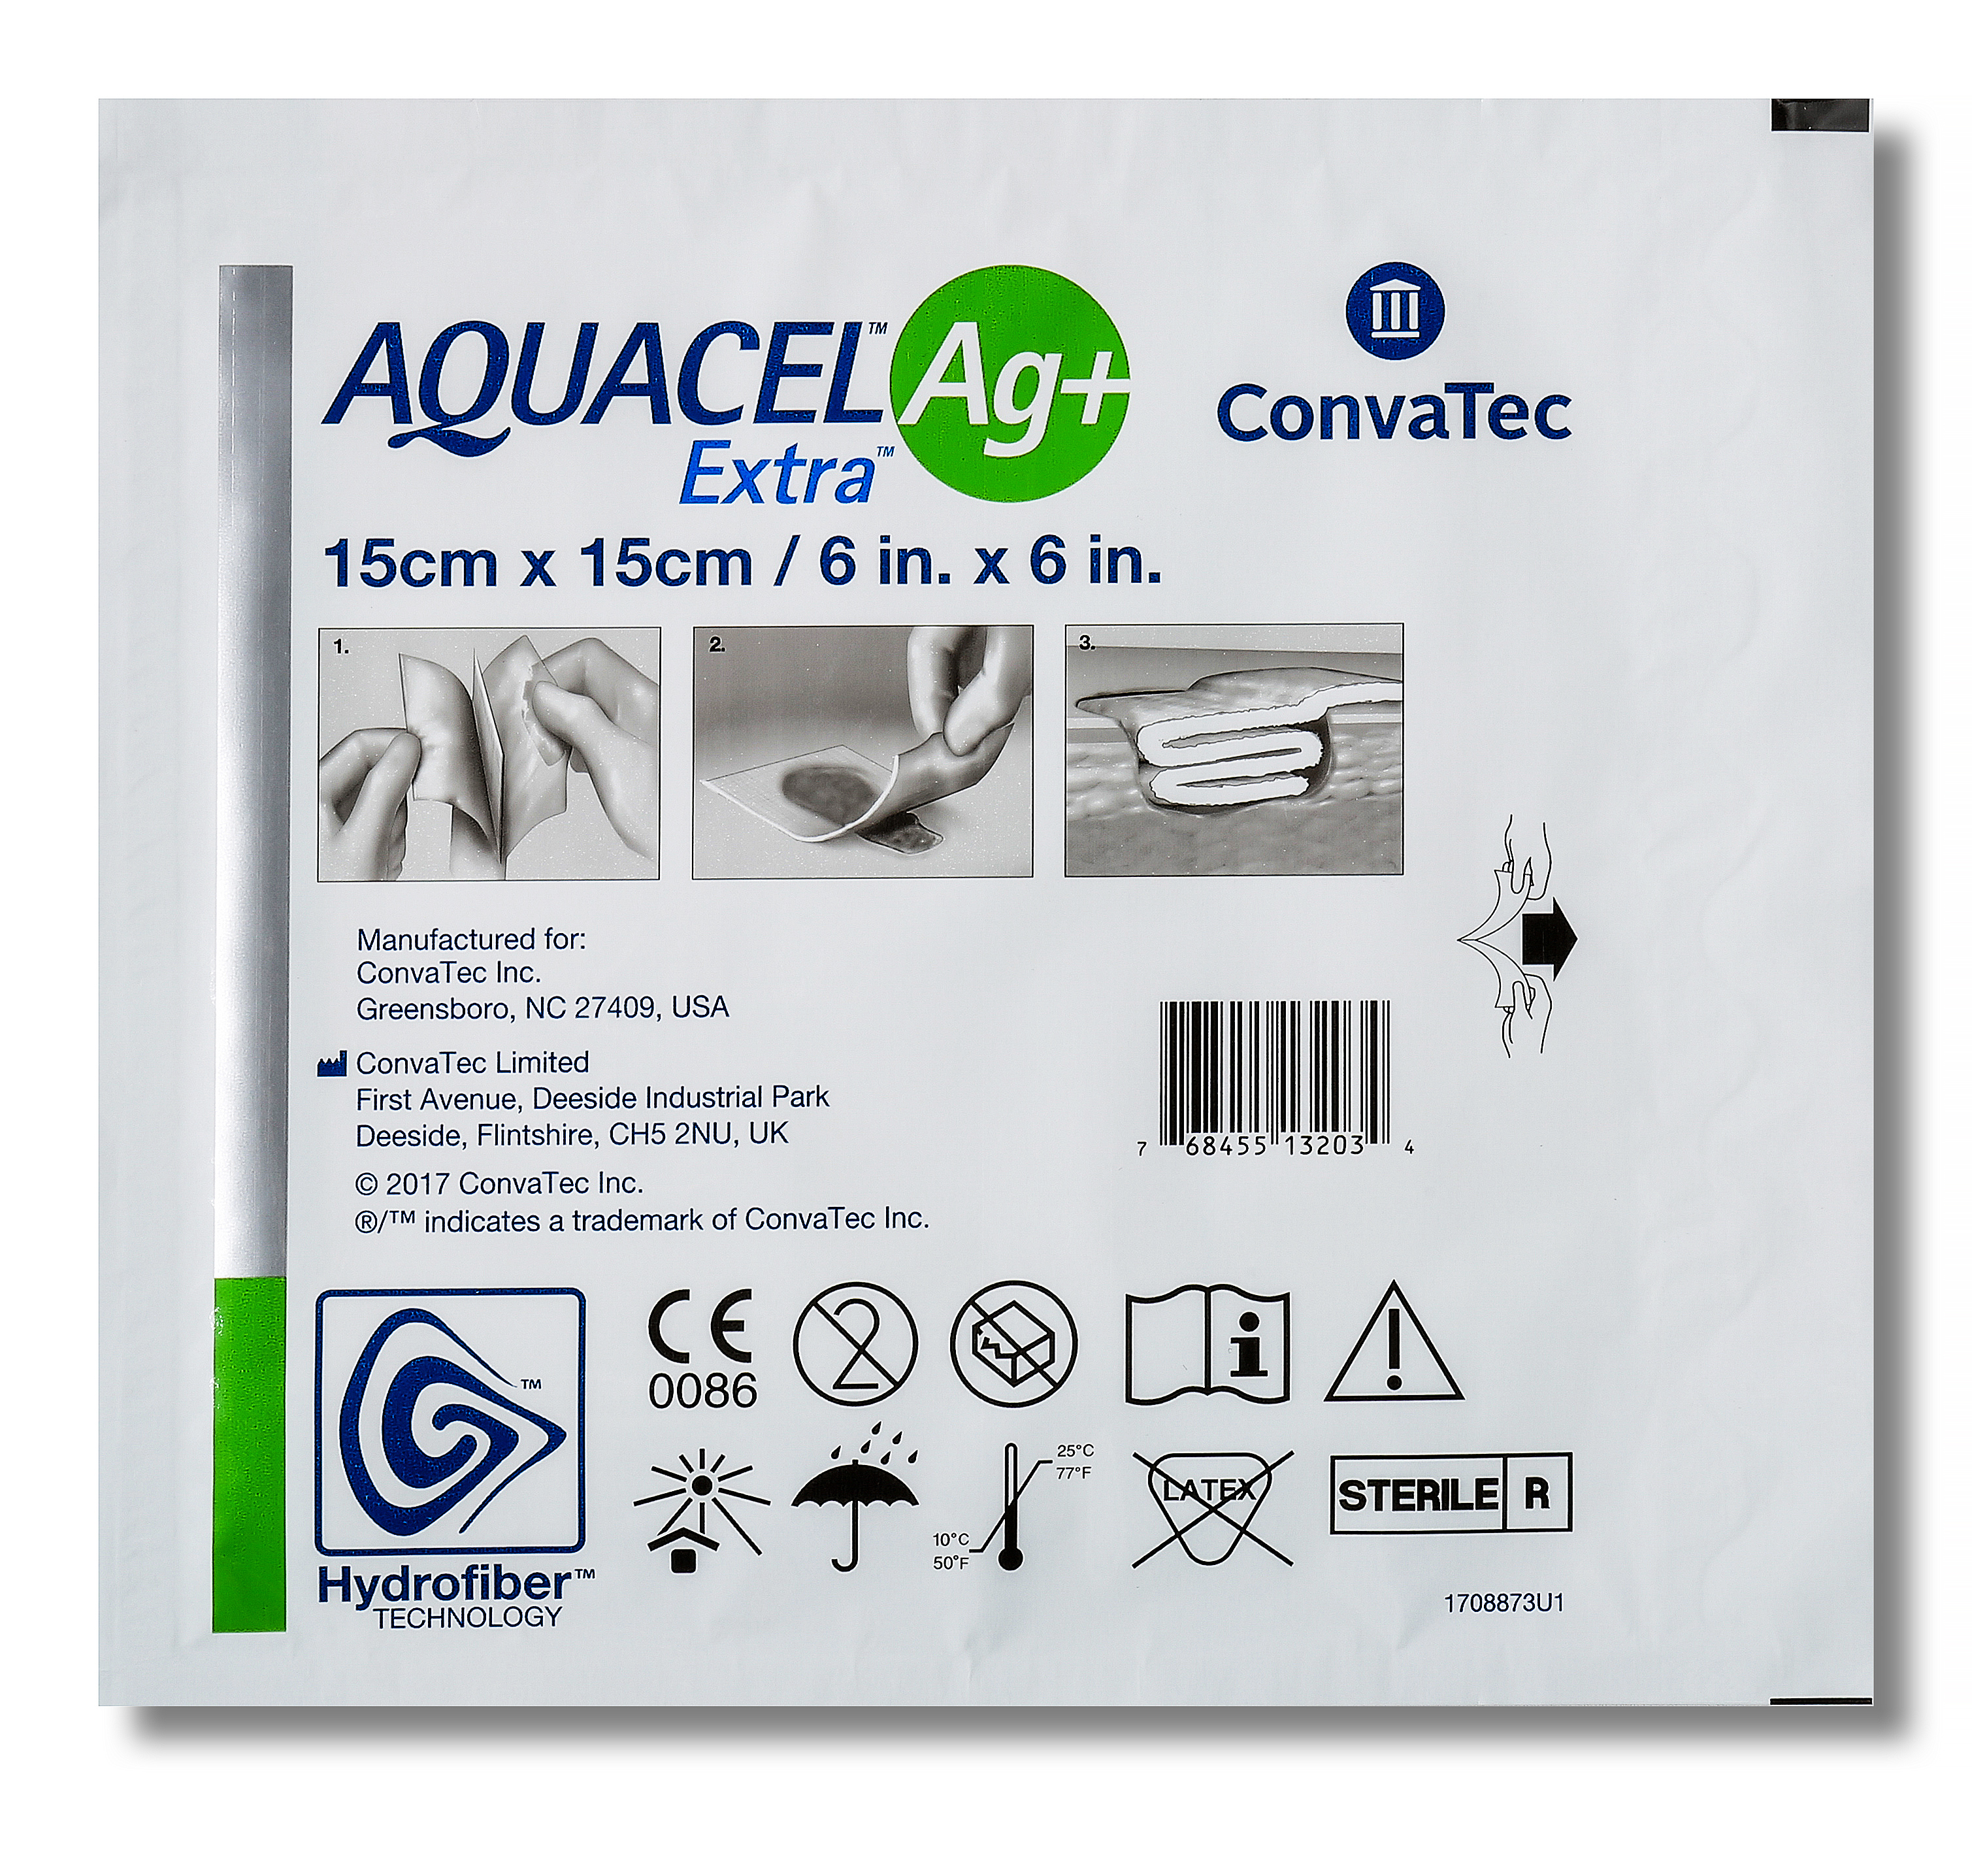 Aquacel Silver Dressing AG+ Extra 15cm x 15cm image 2